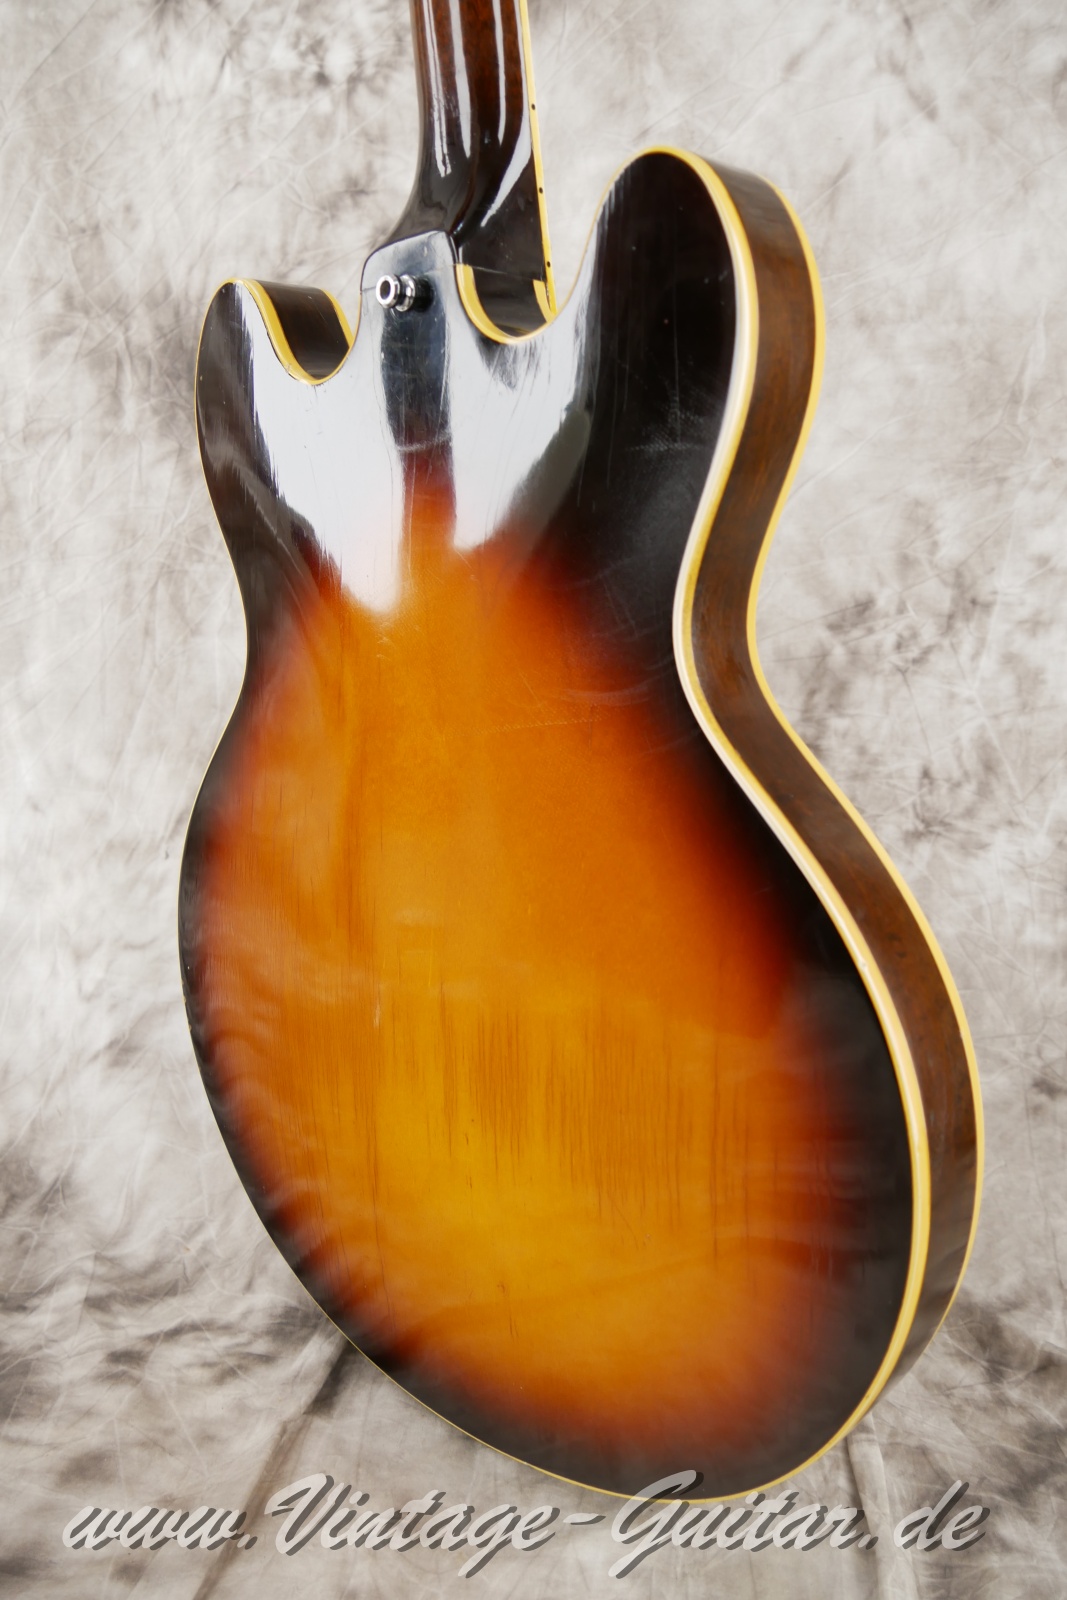 Gibson-ES-335TD-sunburst-1967-014.JPG